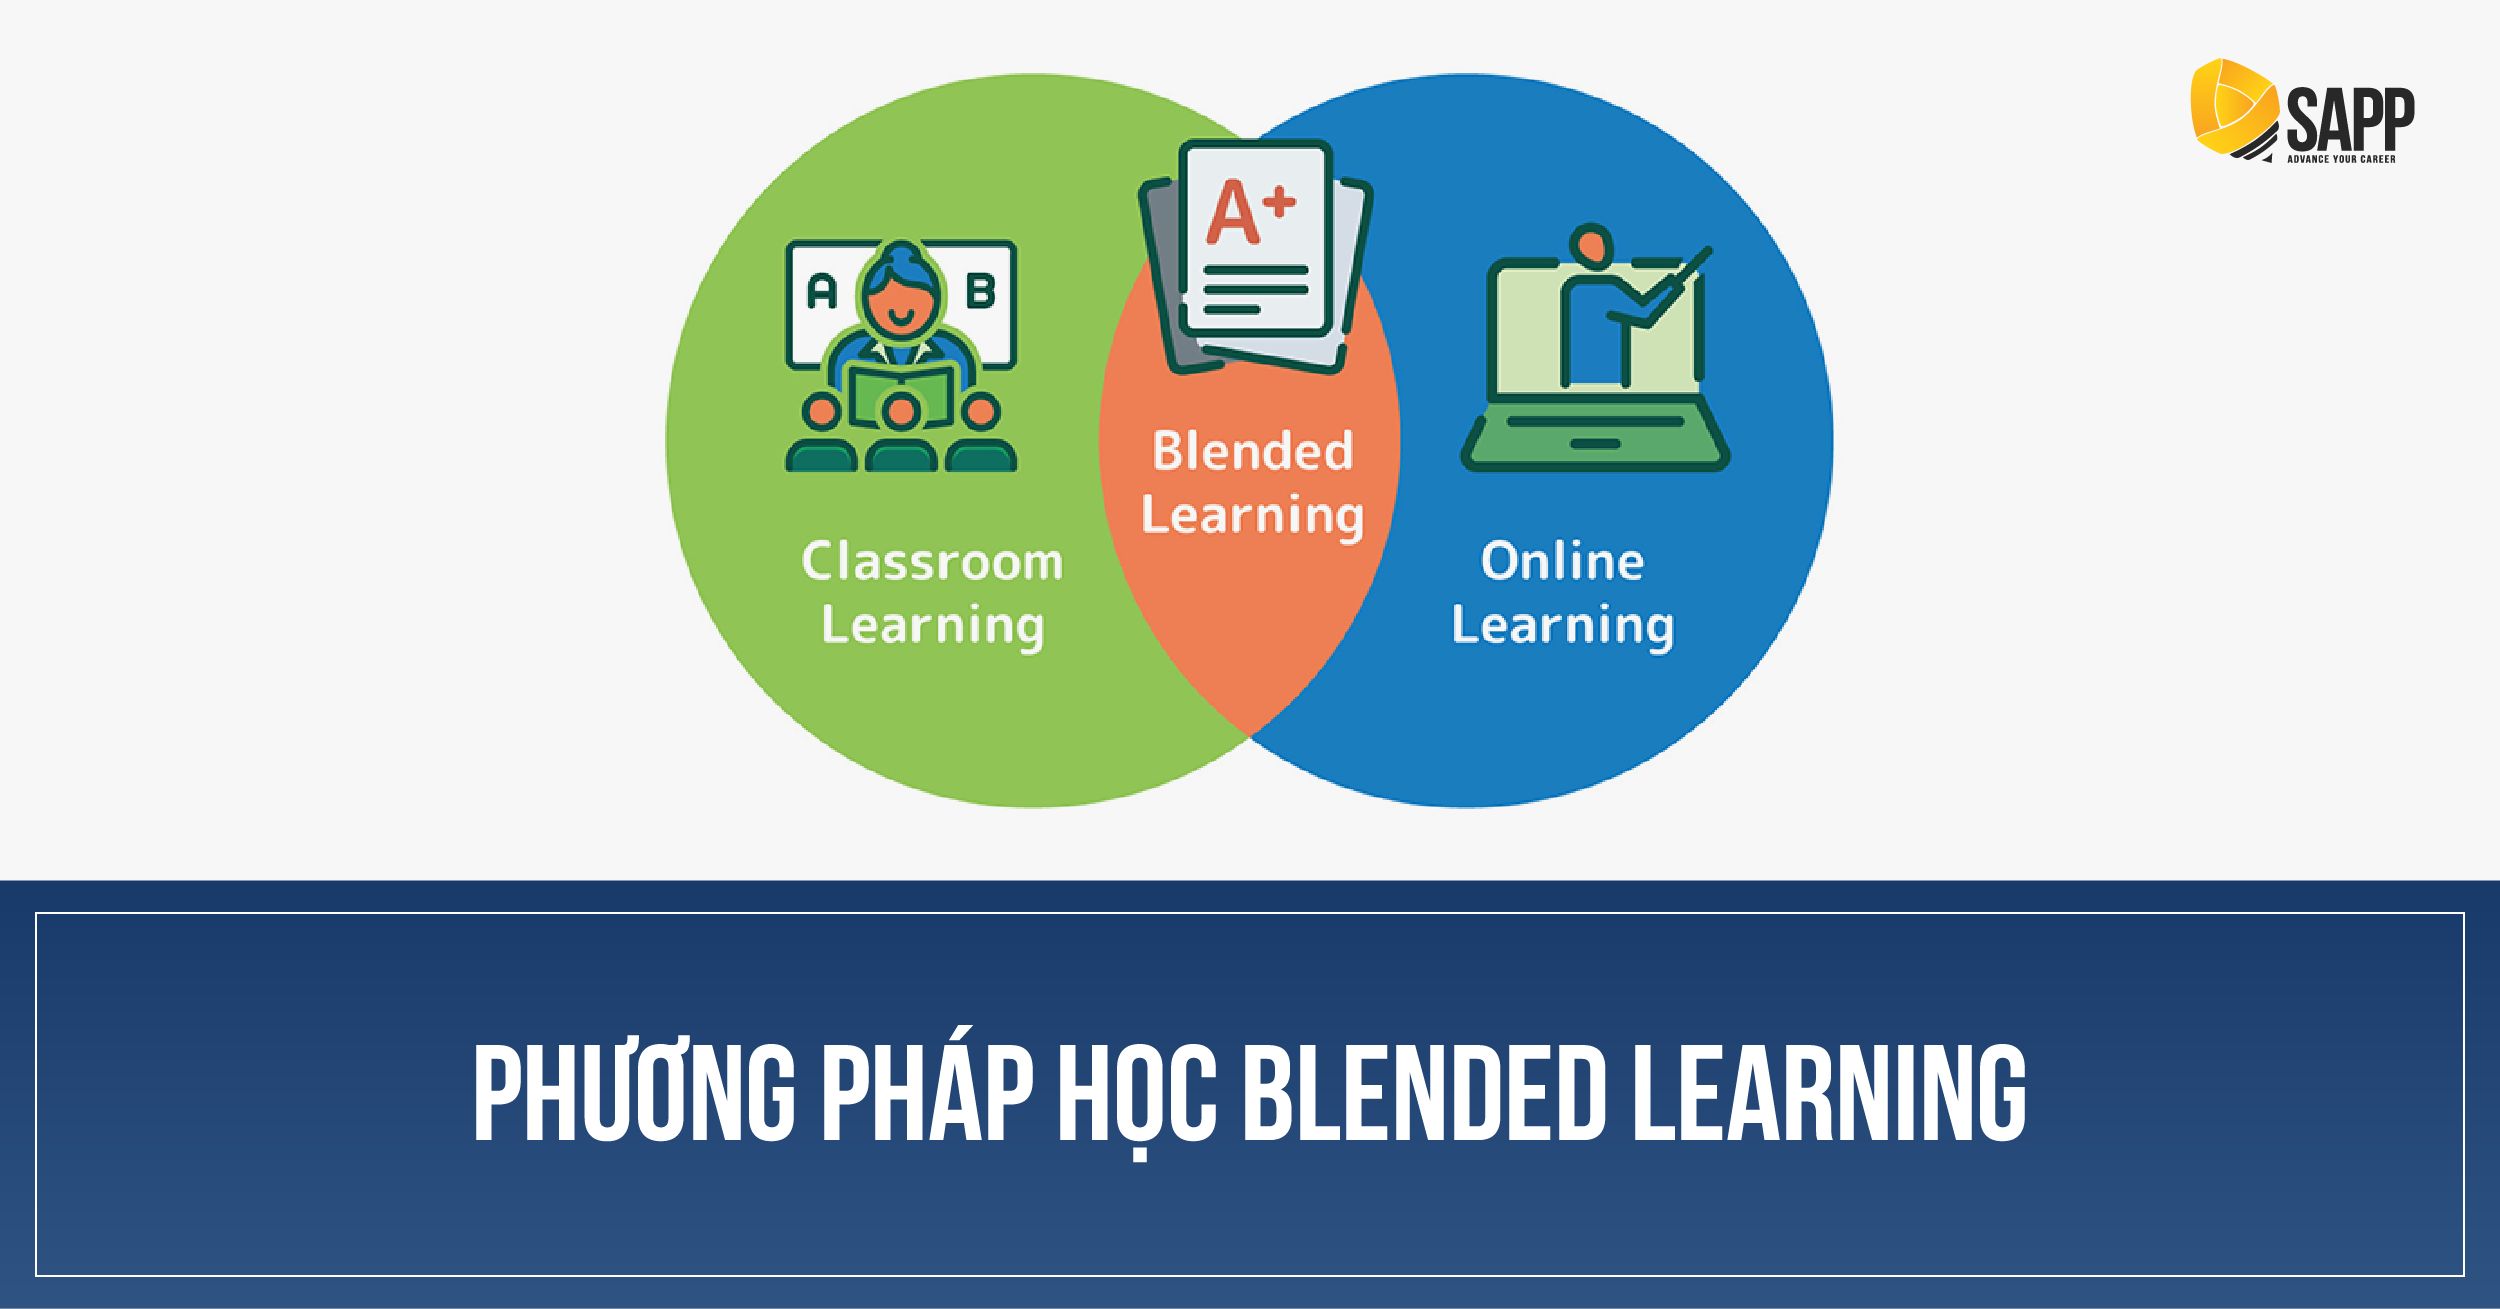 Phương pháp học Blended learning được SAPP thiết kế cá nhân hóa theo năng lực và trải nghiệm của người học 